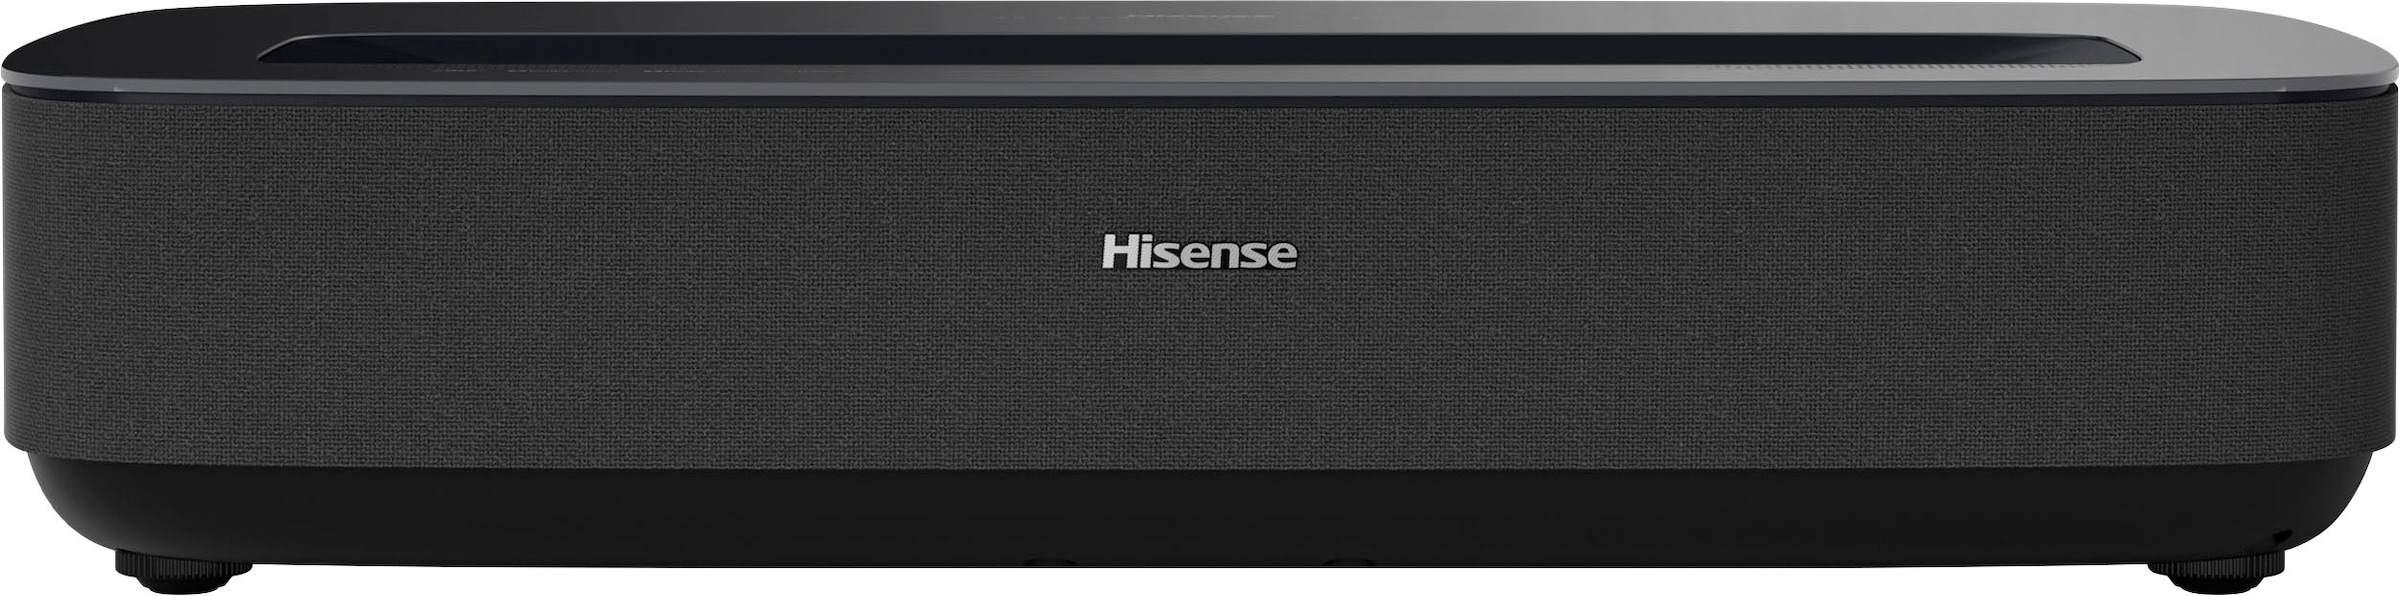 Hisense Laser-TV »PL1SE«